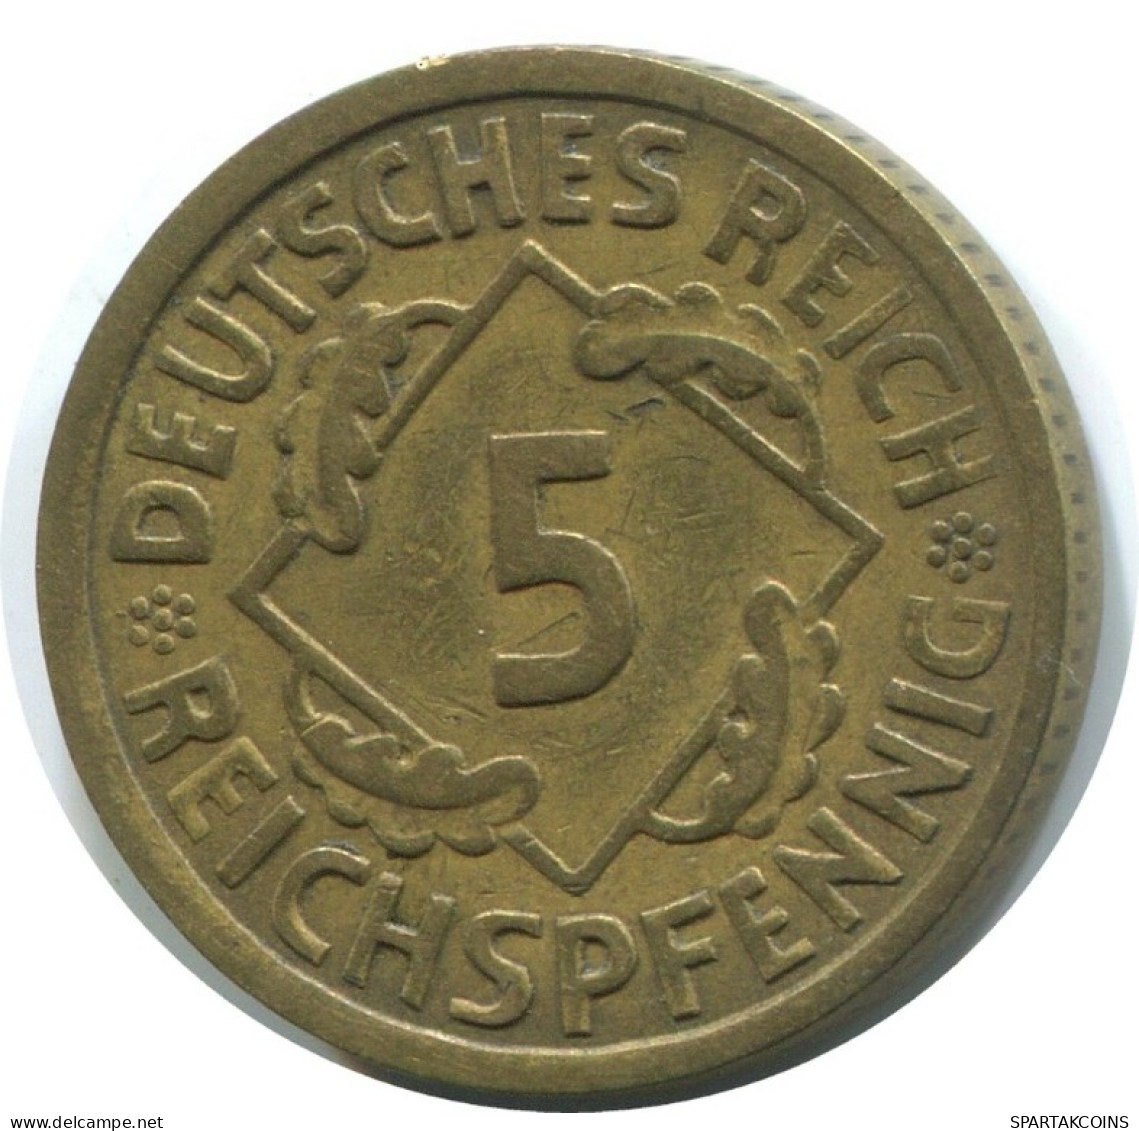 5 REICHSPFENNIG 1925 A DEUTSCHLAND Münze GERMANY #AD819.9.D.A - 5 Rentenpfennig & 5 Reichspfennig